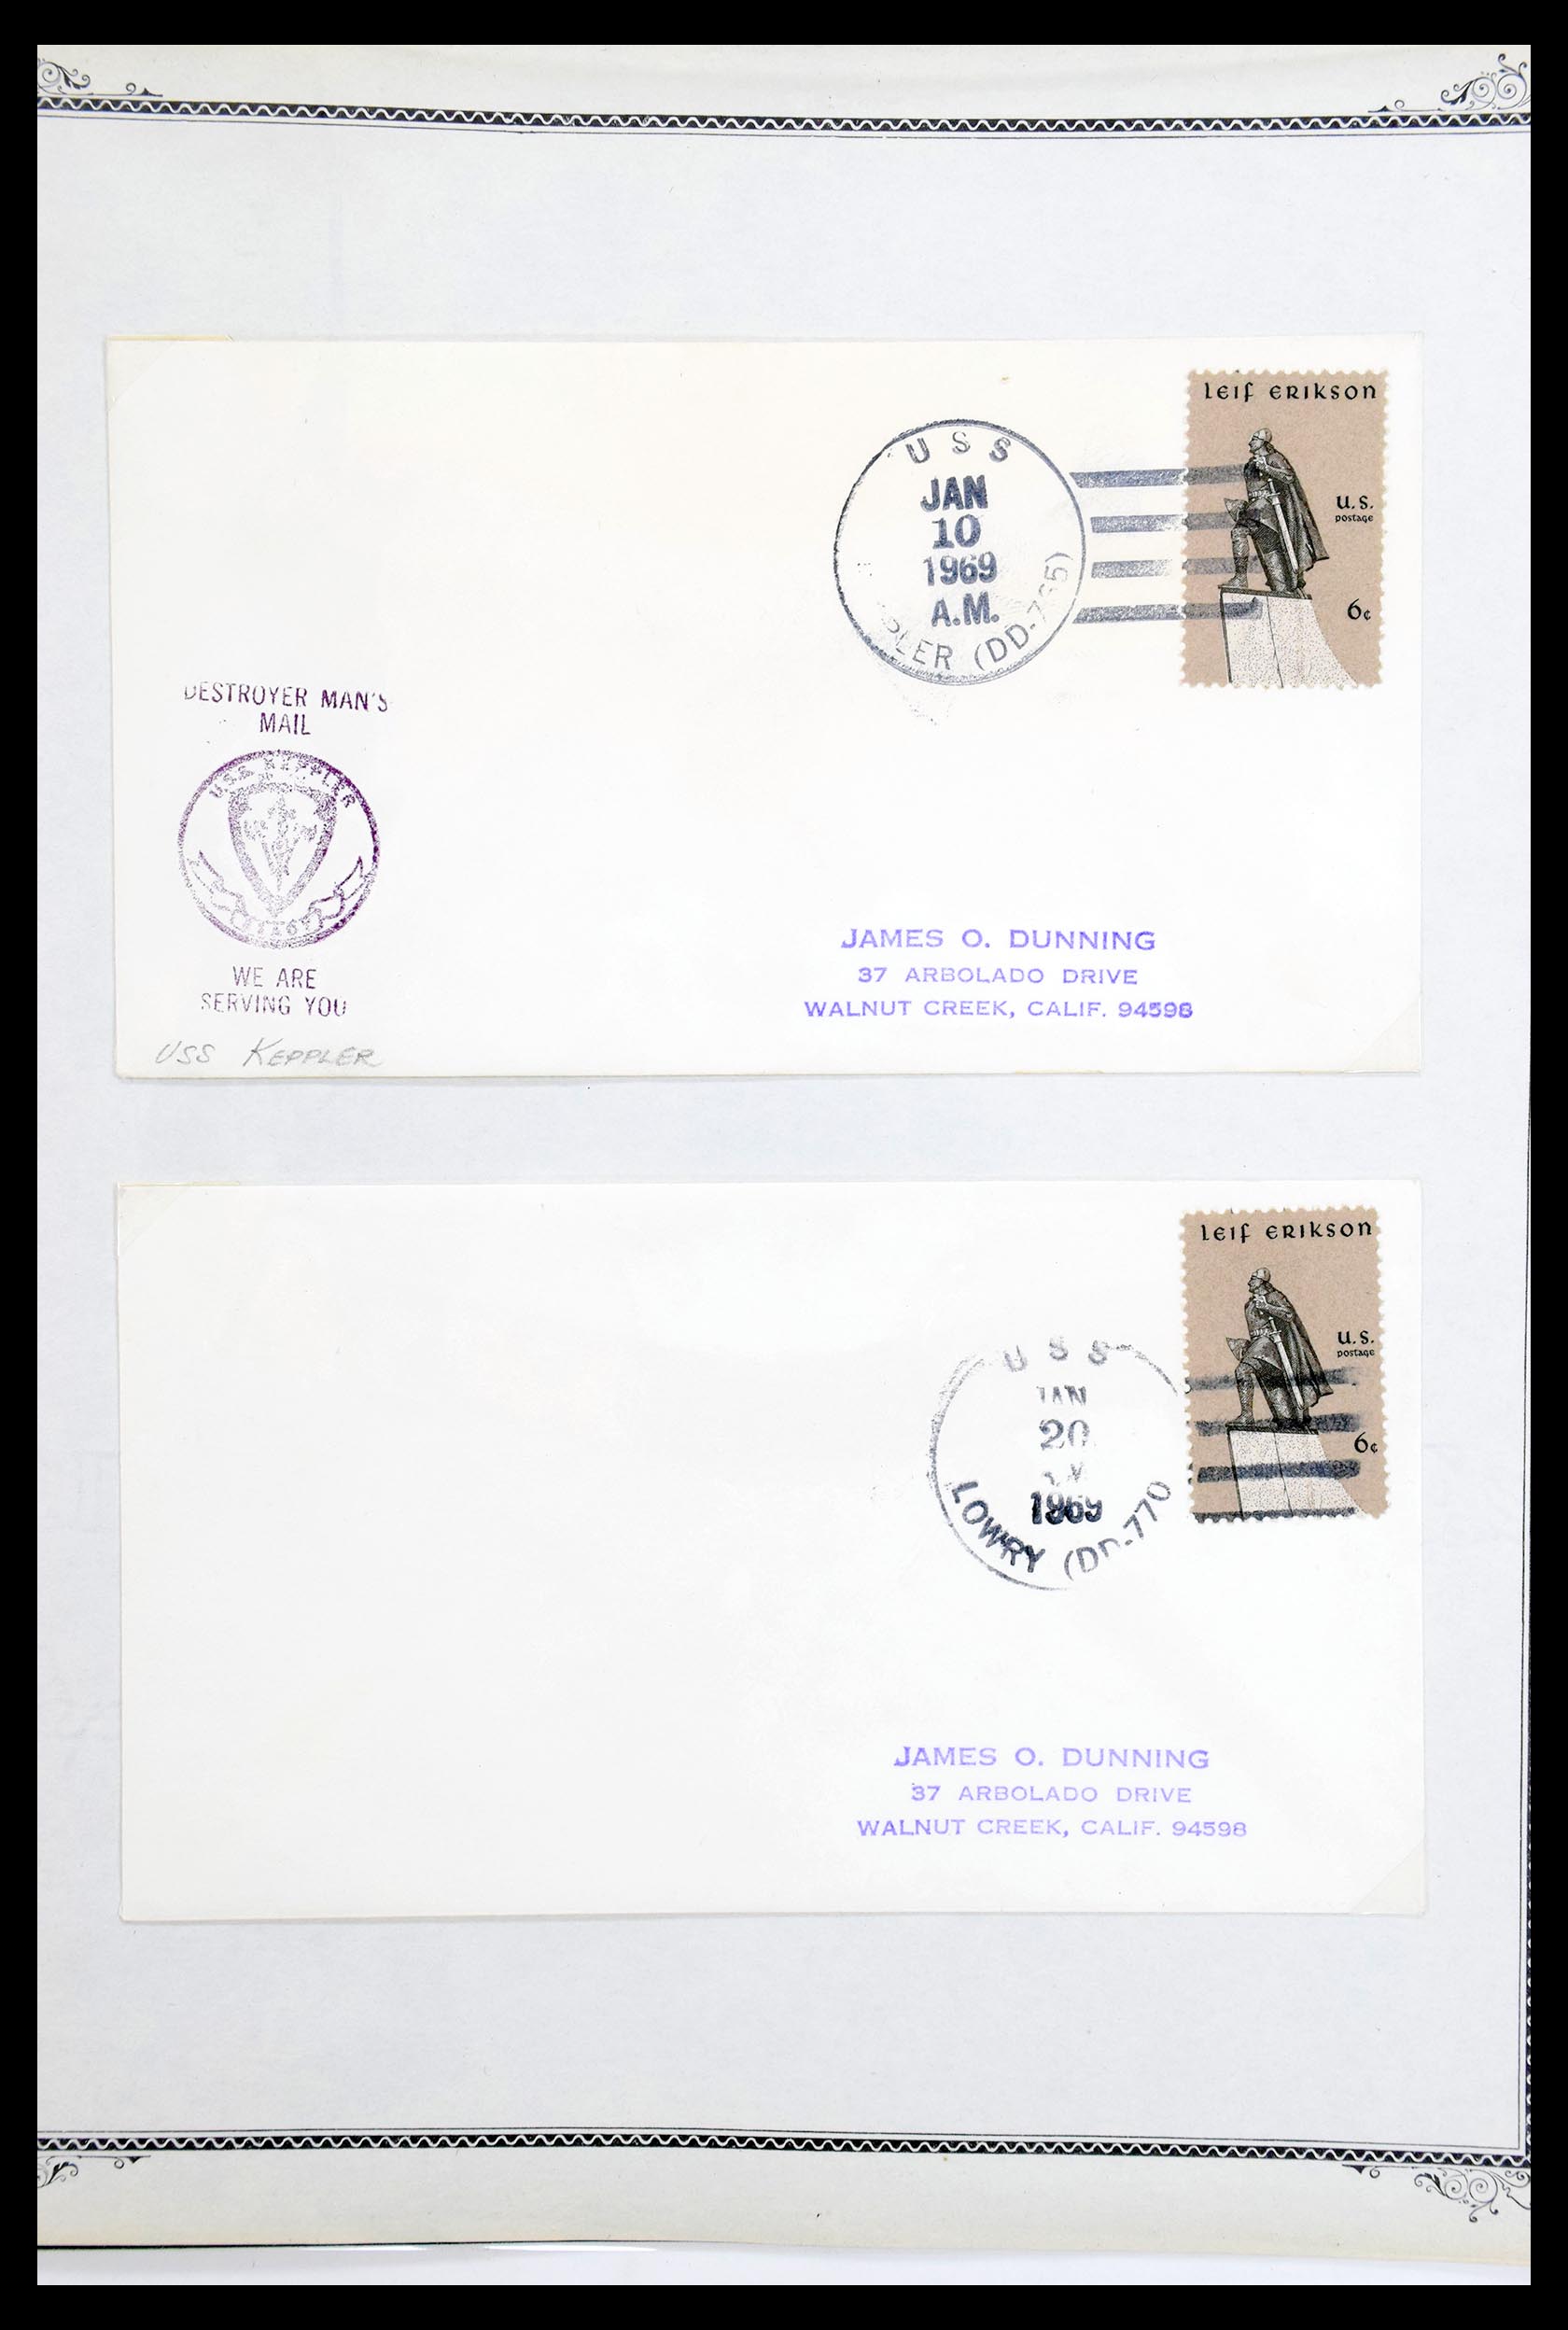 30341 039 - 30341 USA scheepspost brieven 1930-1970.